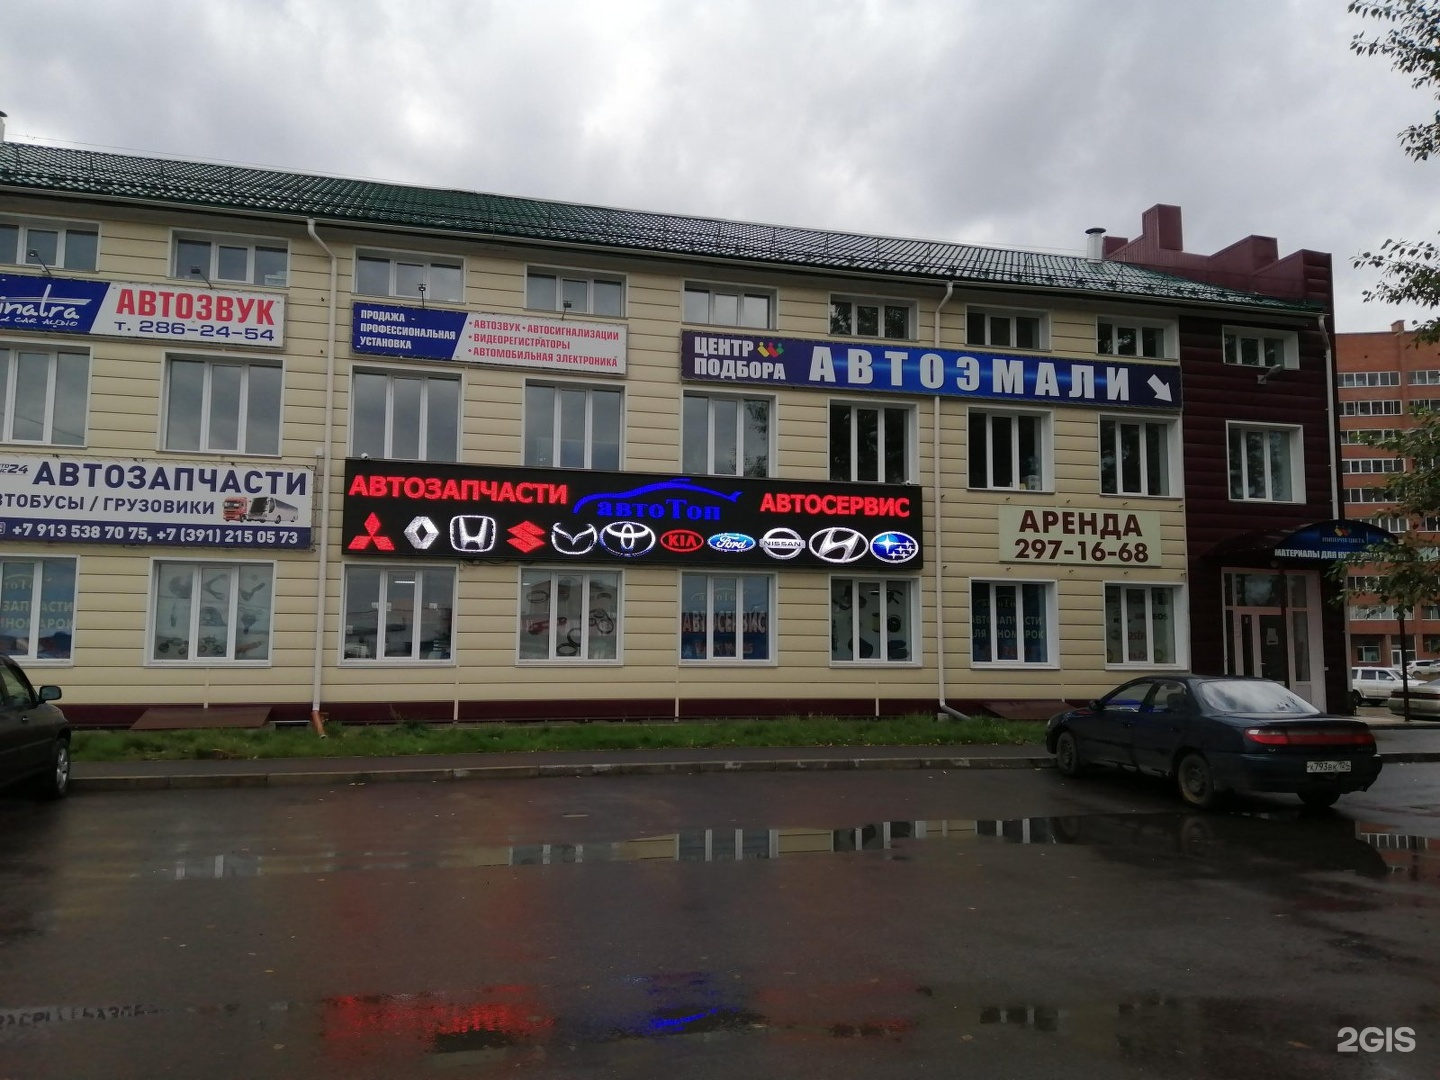 Авто Запчасти На Хендай Магазины В Красноярске